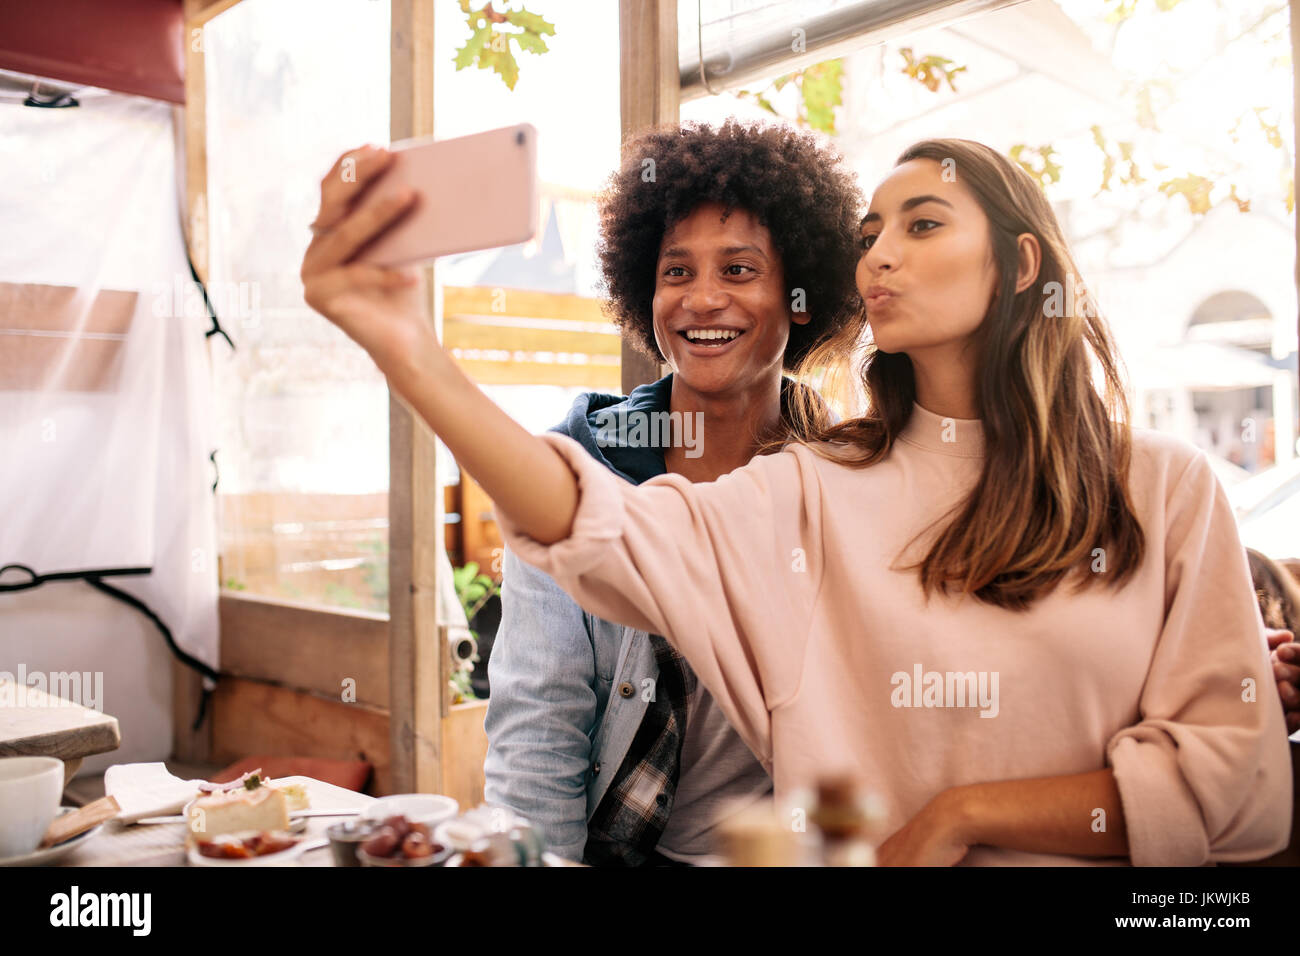 Junge Frau nehmen Selfie mit afrikanischen Mann in der Cafeteria. Junges Paar Smartphone im Café betrachten. Stockfoto